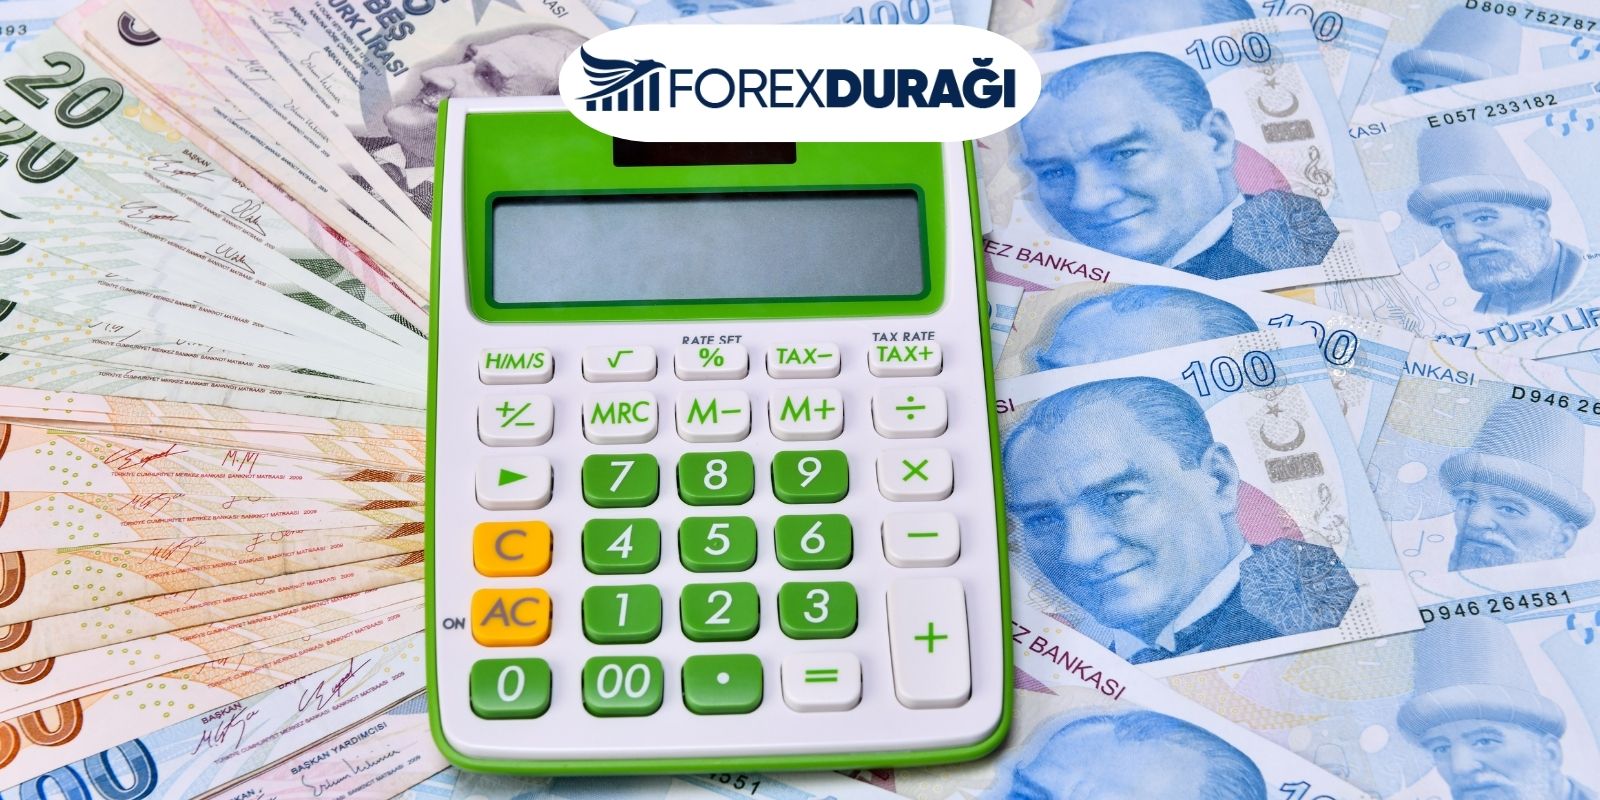 Türk Ekonomi Bankası A.Ş. Forex Var mı? Hisse Senedi Var Mı?